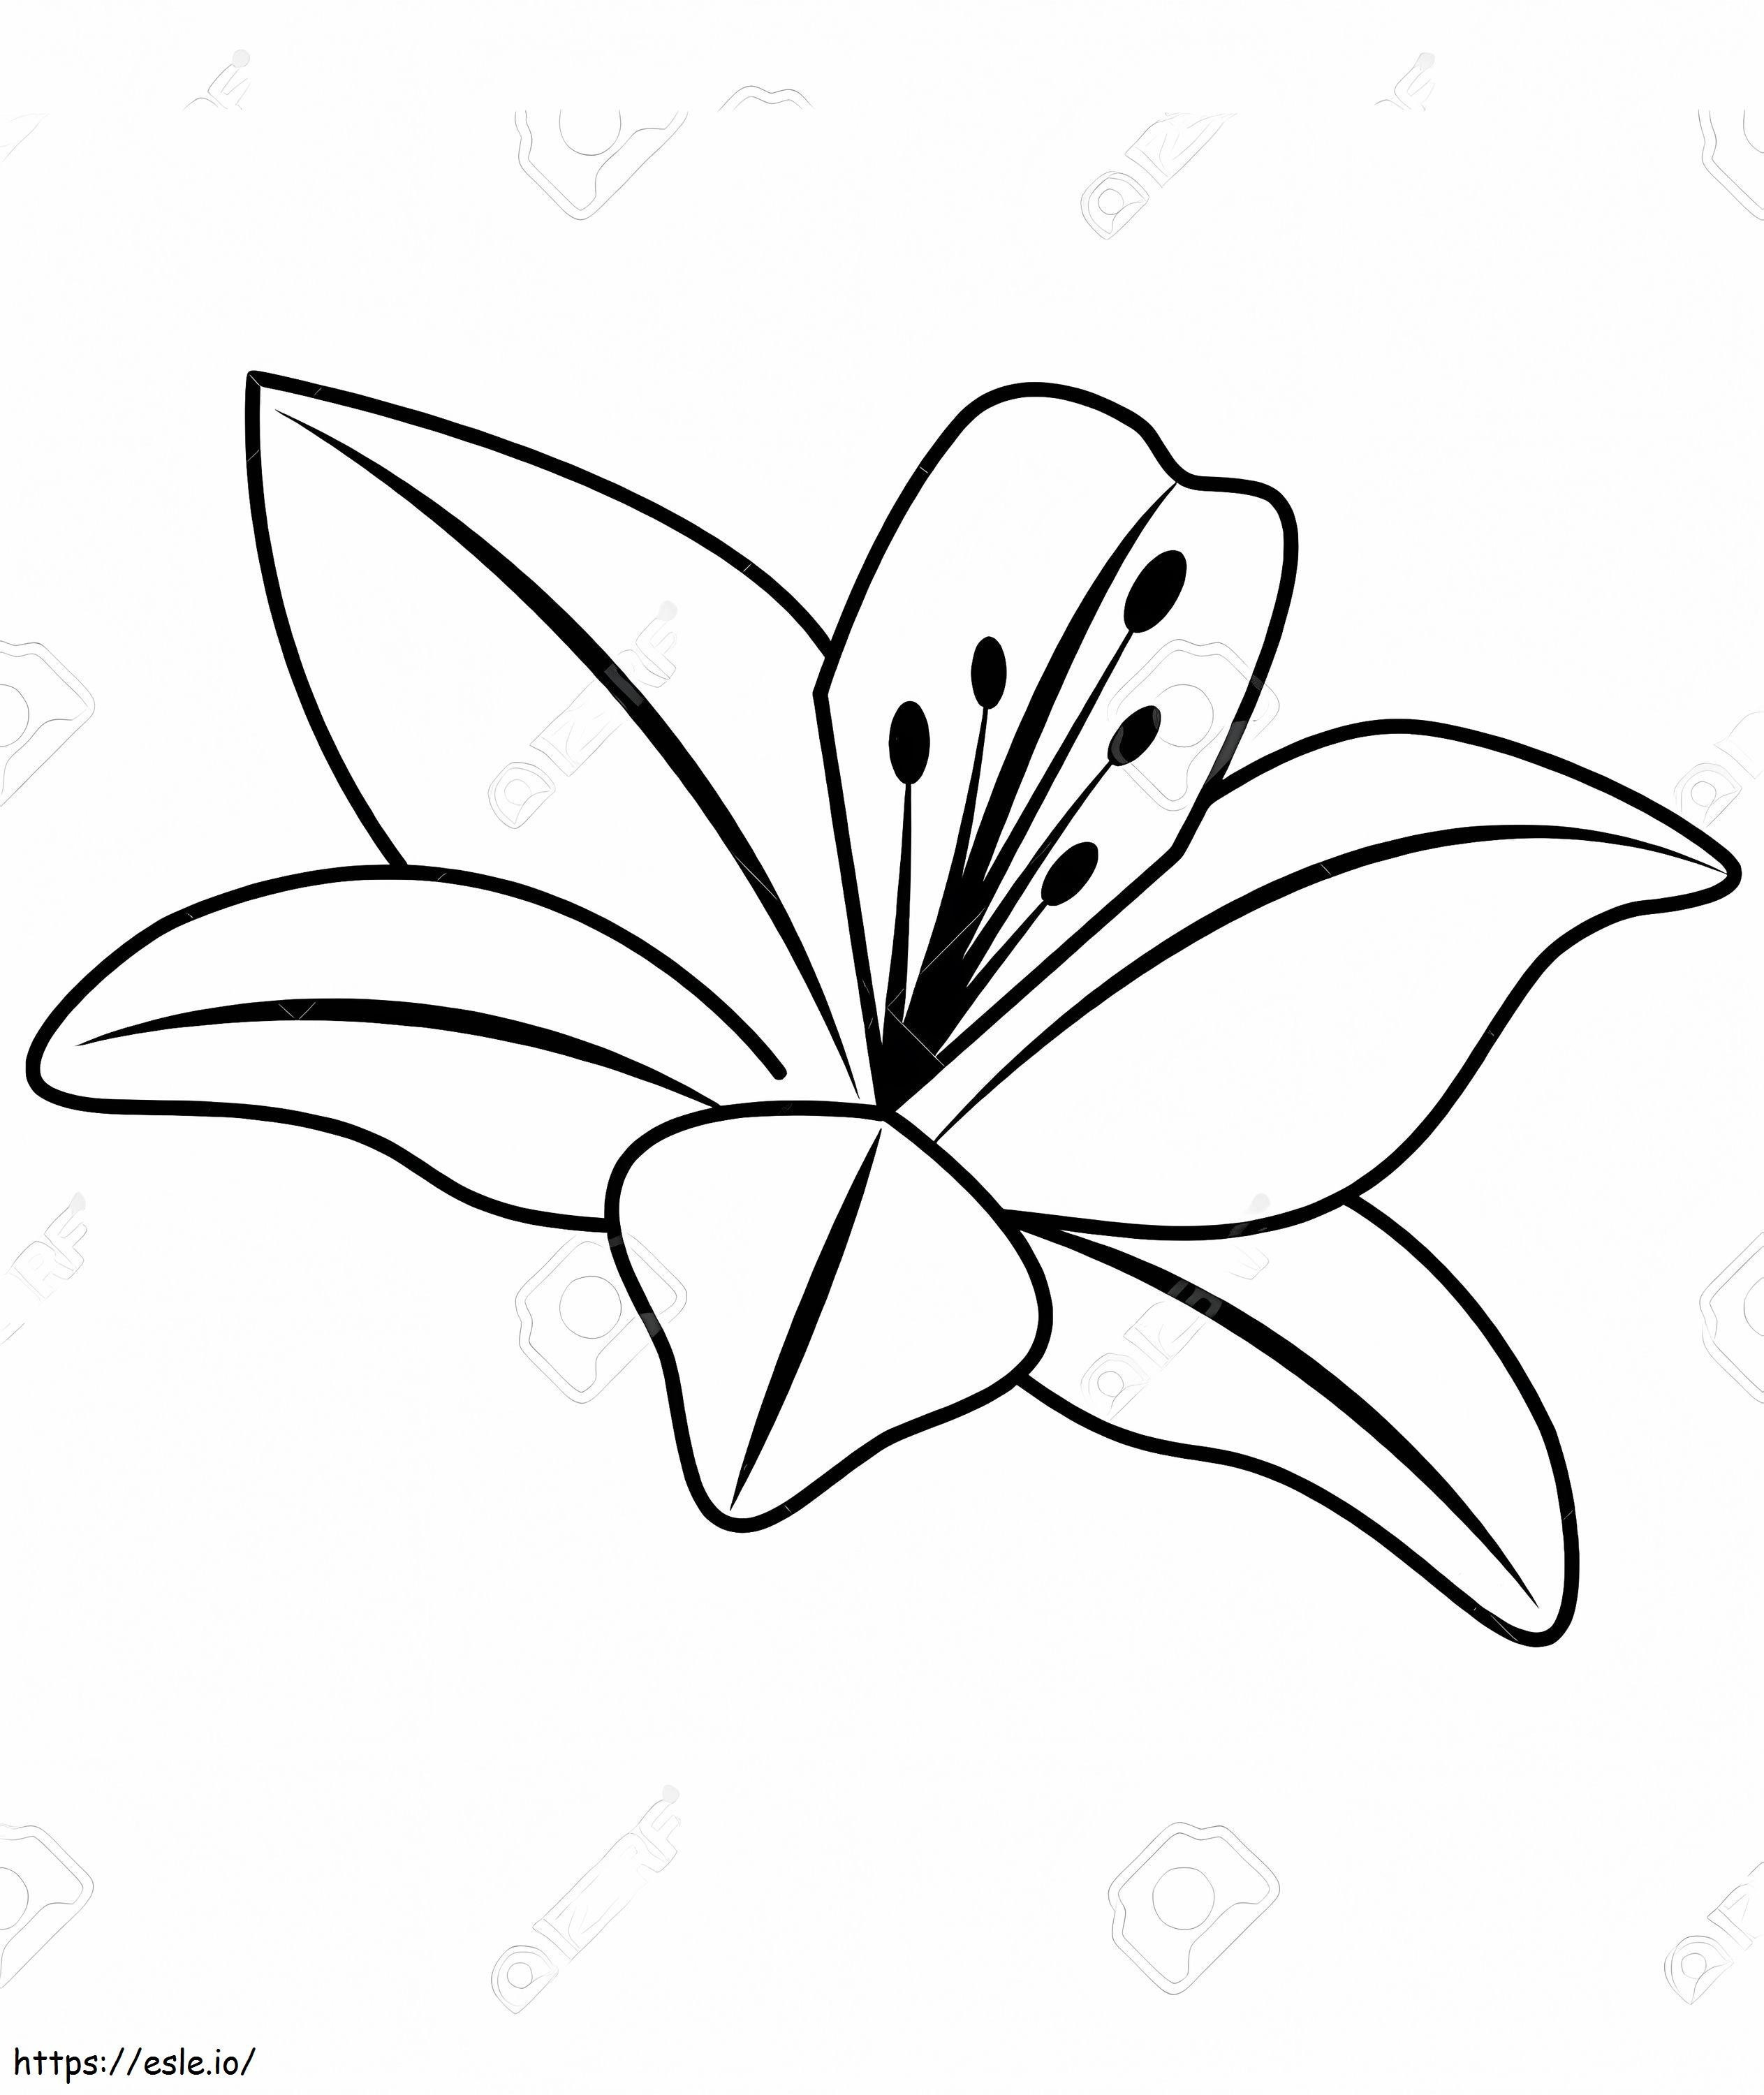 flor de lirio 2 para colorear